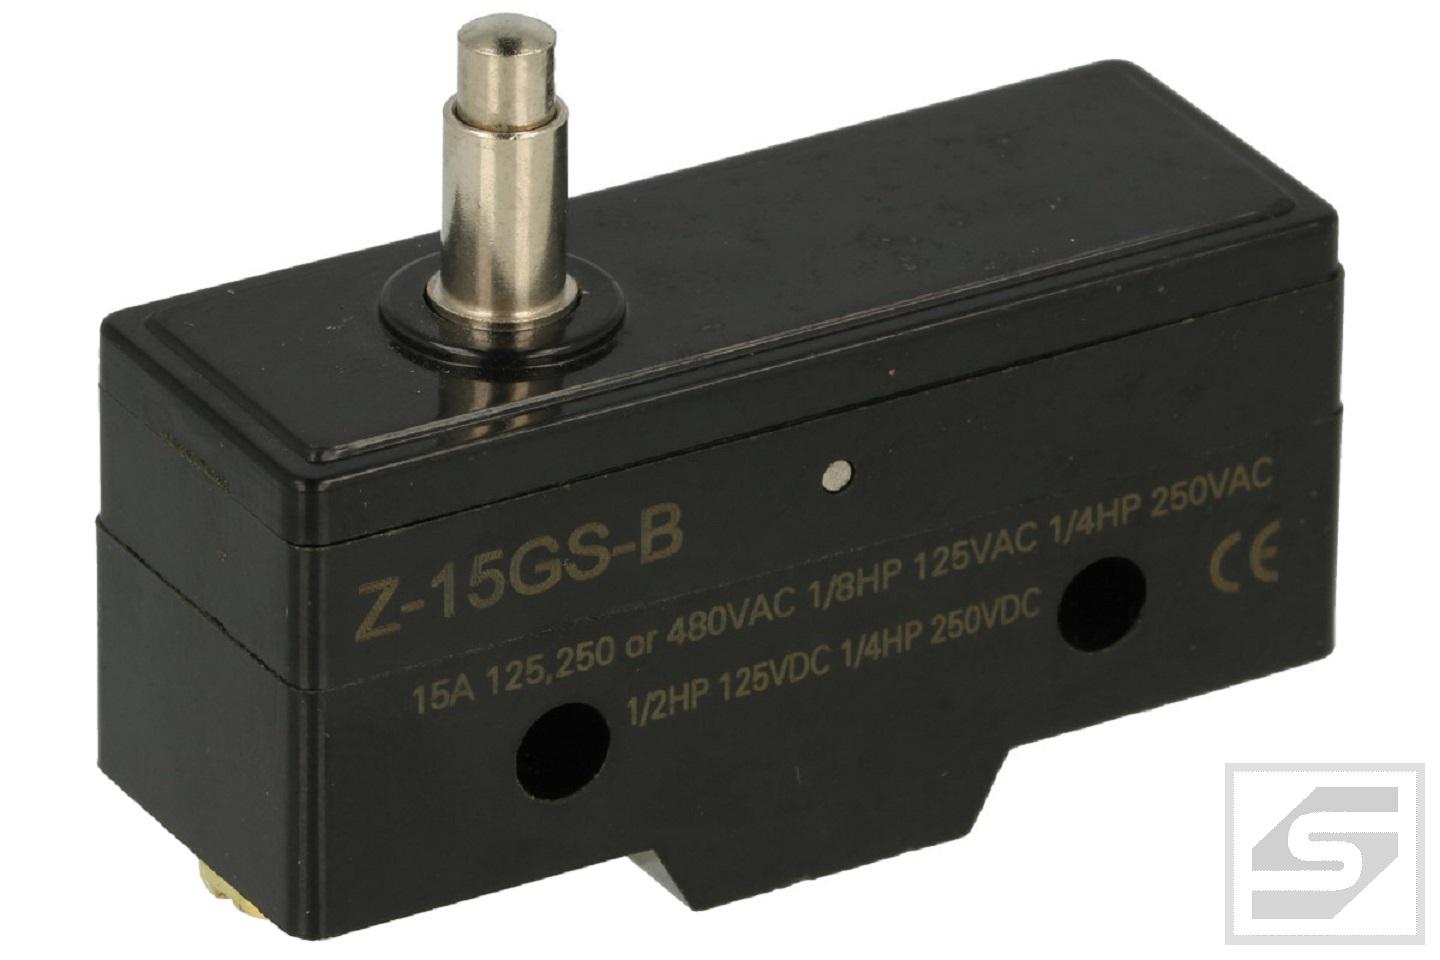 Mikroprzełącznik Z-15GS-B HOWO bez dźwigni;trzpień 13.2mm;15A/250V